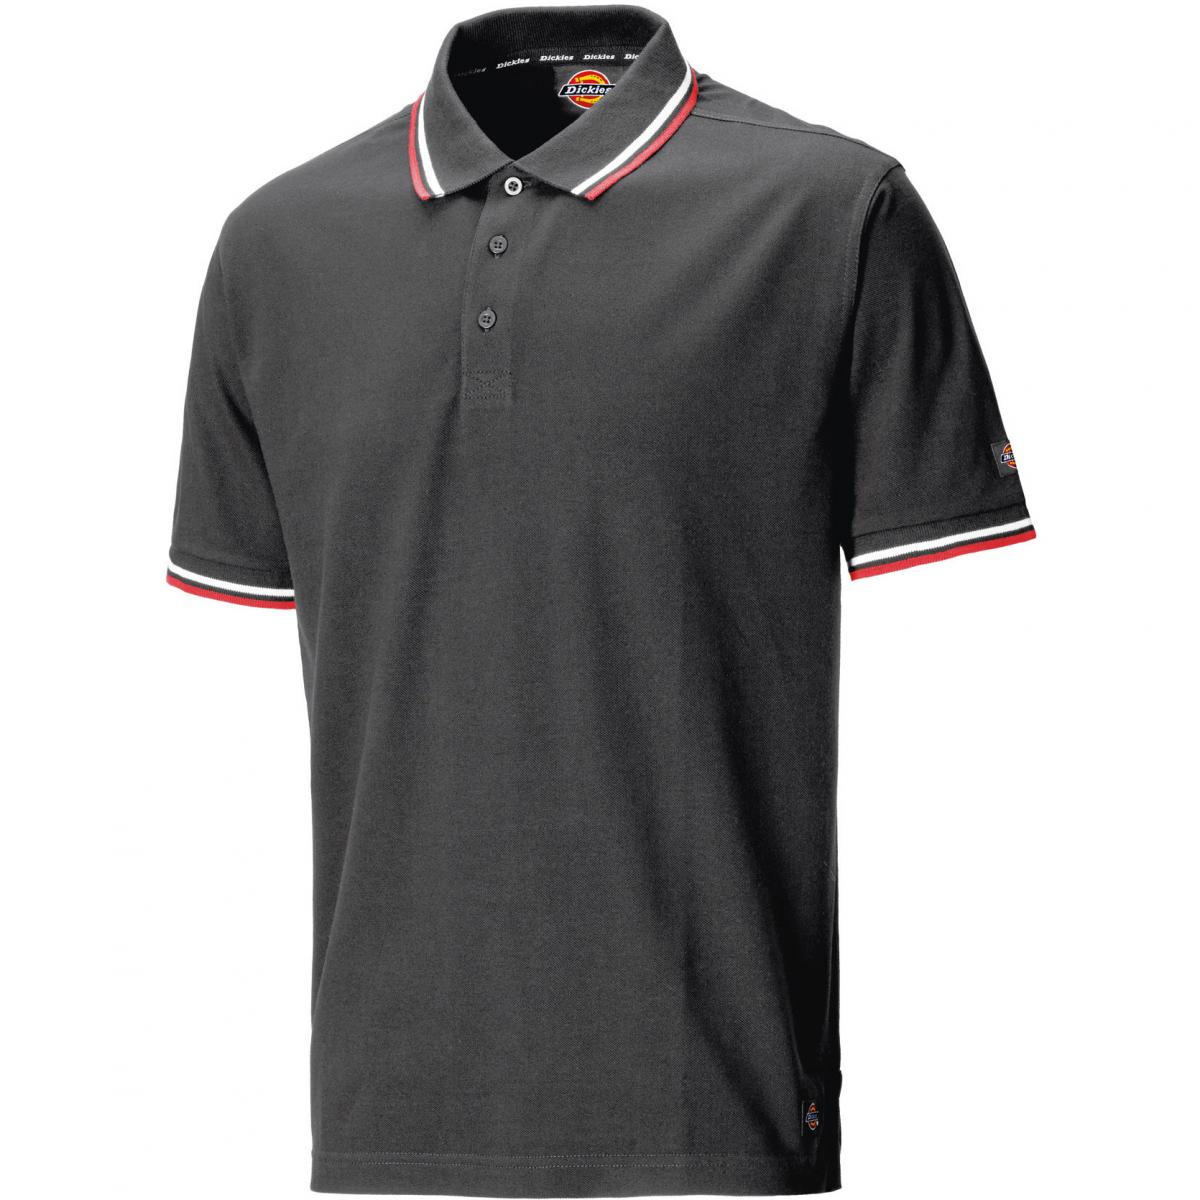 Hersteller: Dickies Herstellernummer: SH2001 Artikelbezeichnung: Polo-Shirt Riverton Farbe: Grau